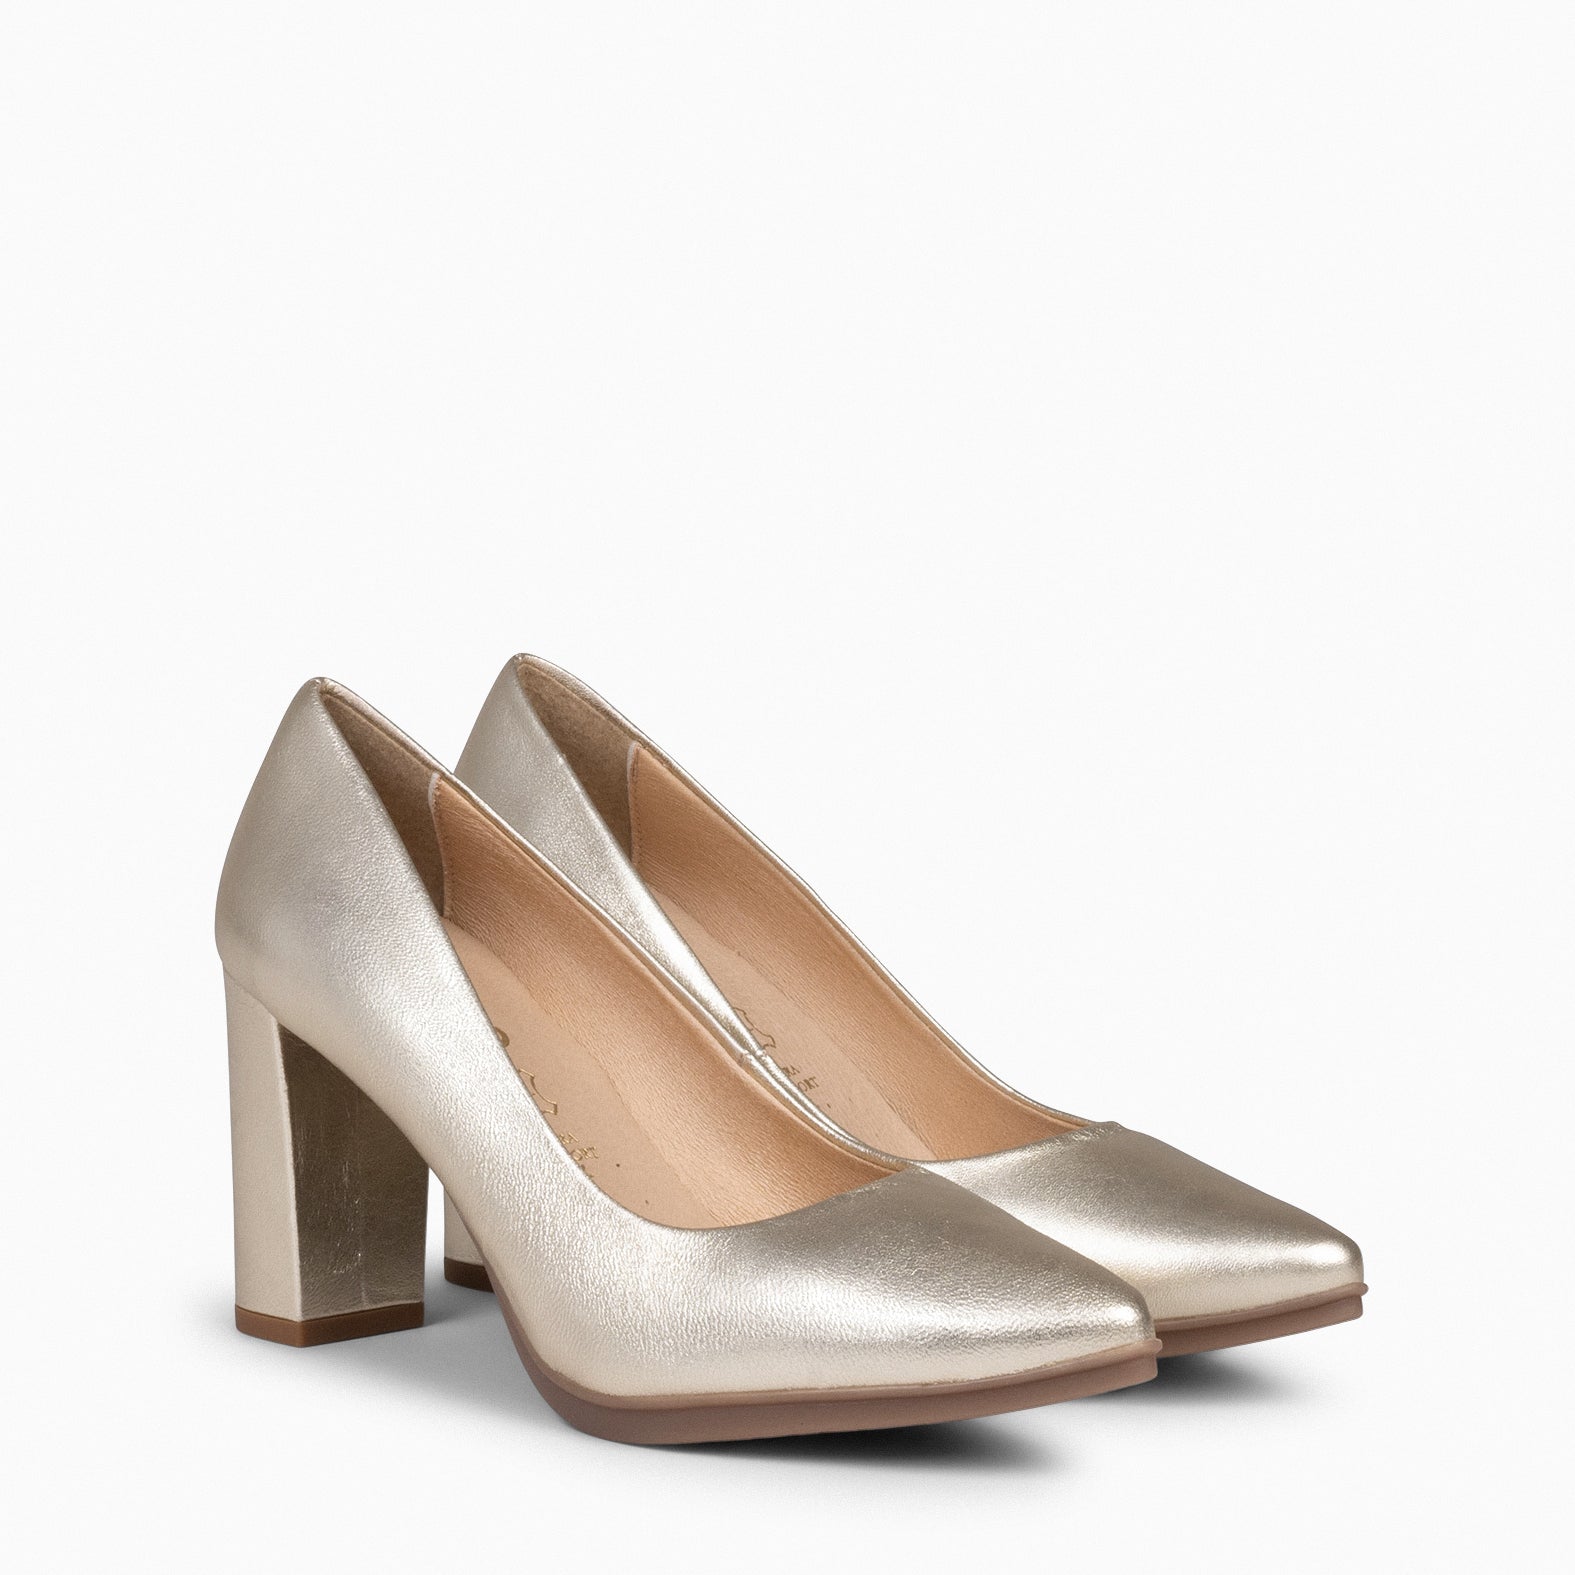 URBAN SPLASH – GOLDEN metallic leather heels